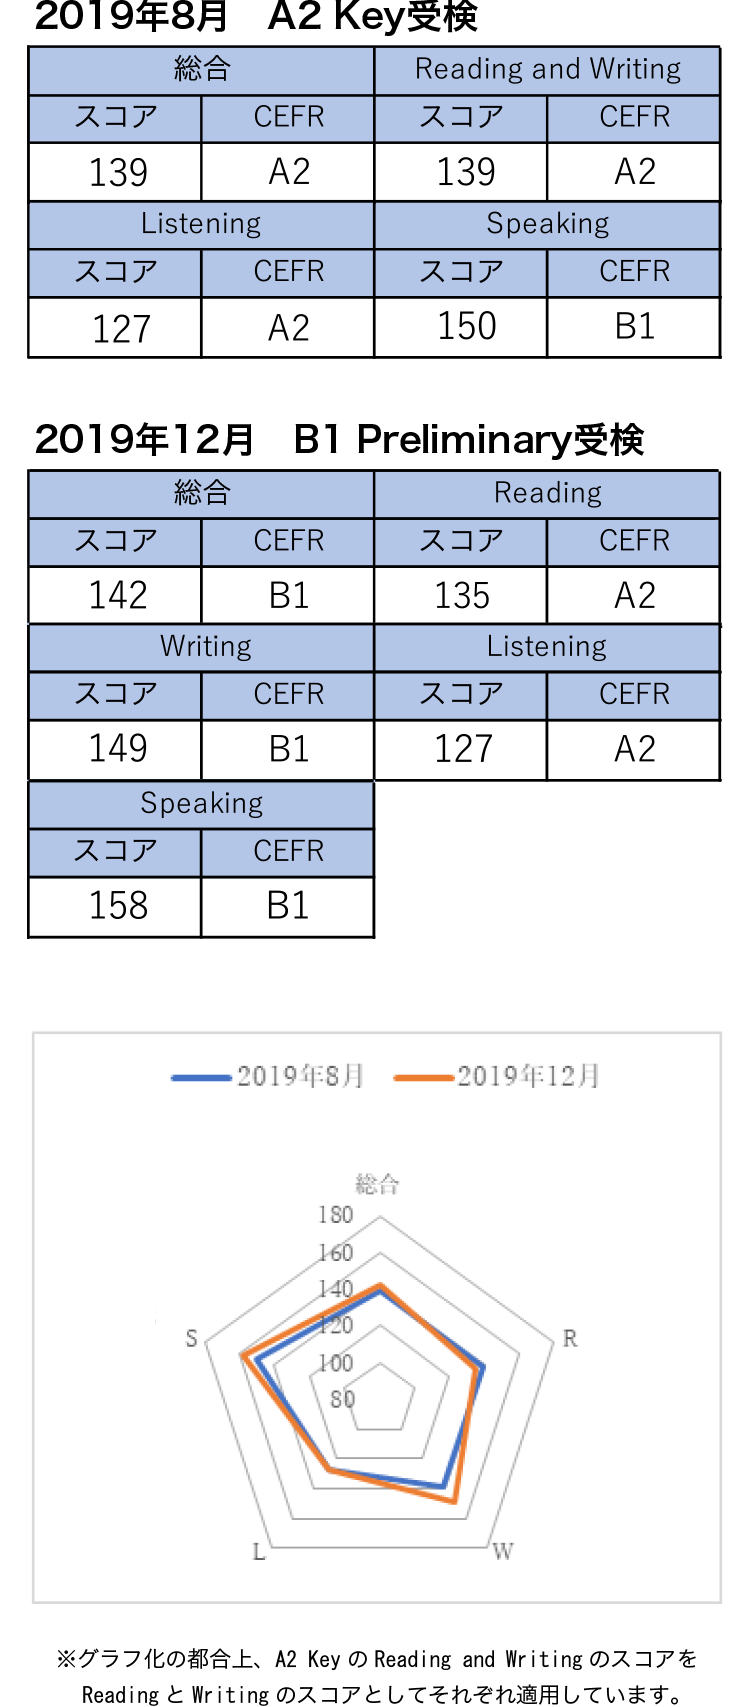 ケンブリッジ英語検定 2019年8月 A2 Key受検 2019年12月 B1 Preliminary受検 成績